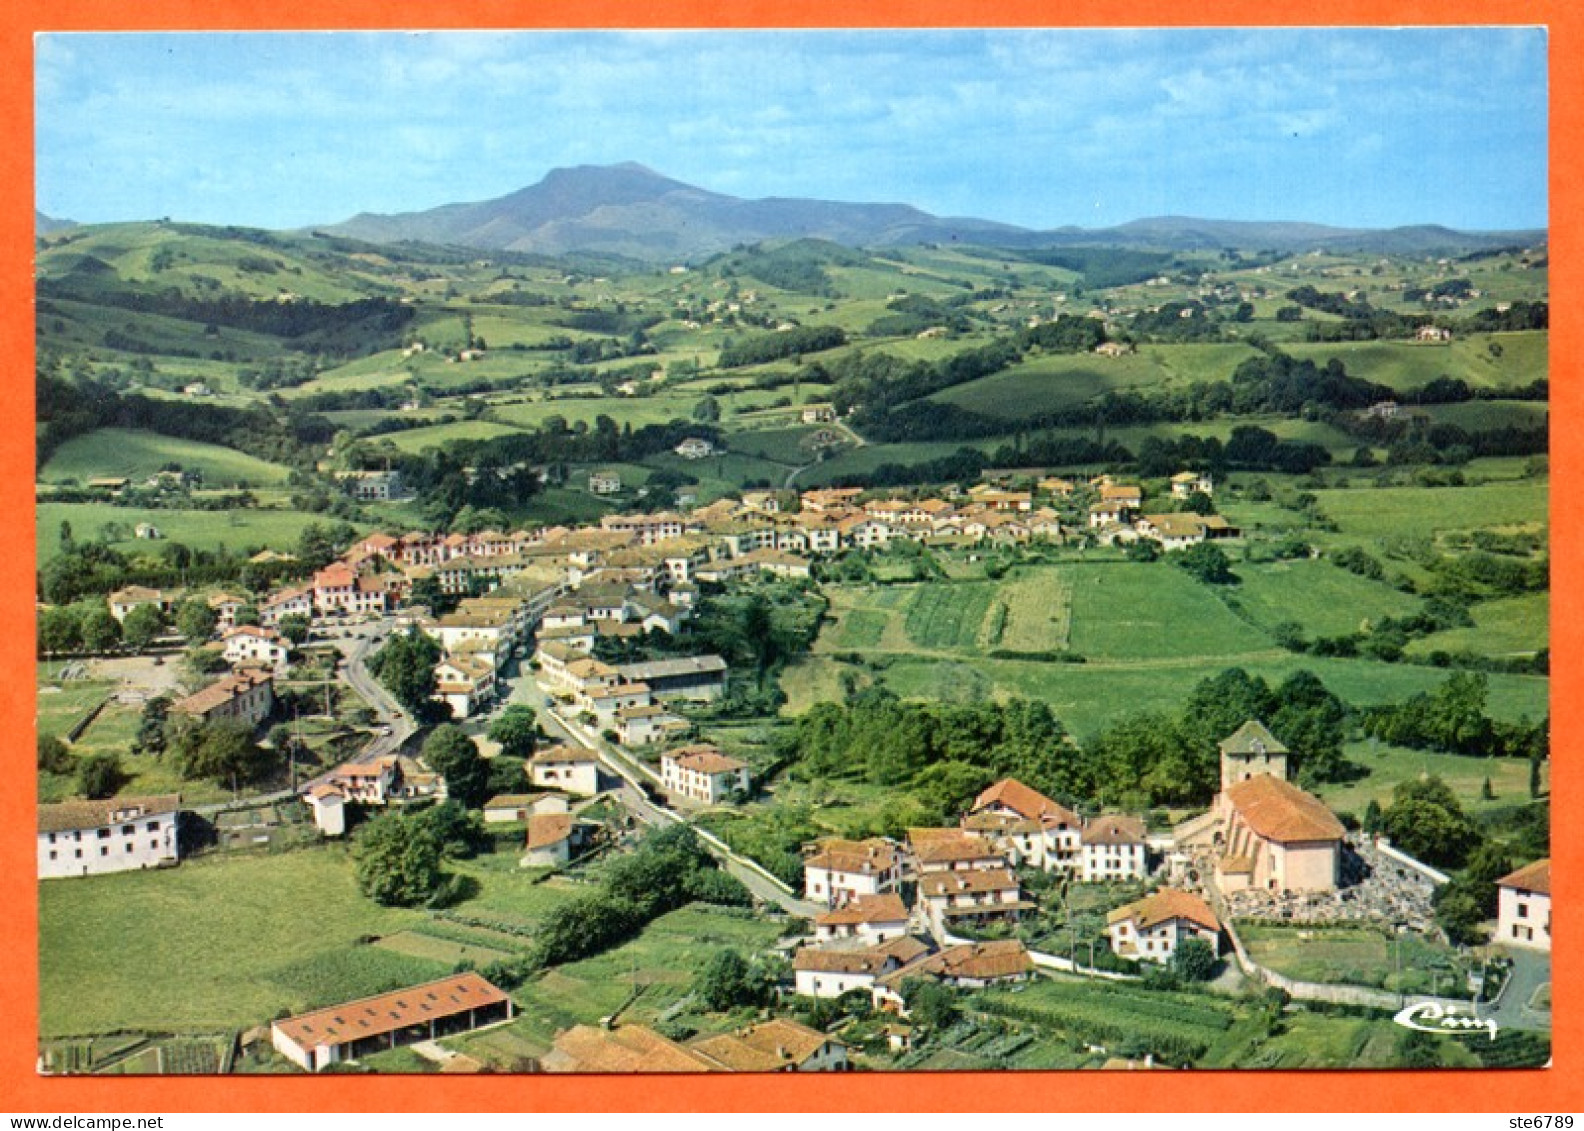 64 ESPELETTE Vue Générale Aérienne Village Au Fond Rhune Pays Basque CIM Carte Vierge TBE - Espelette